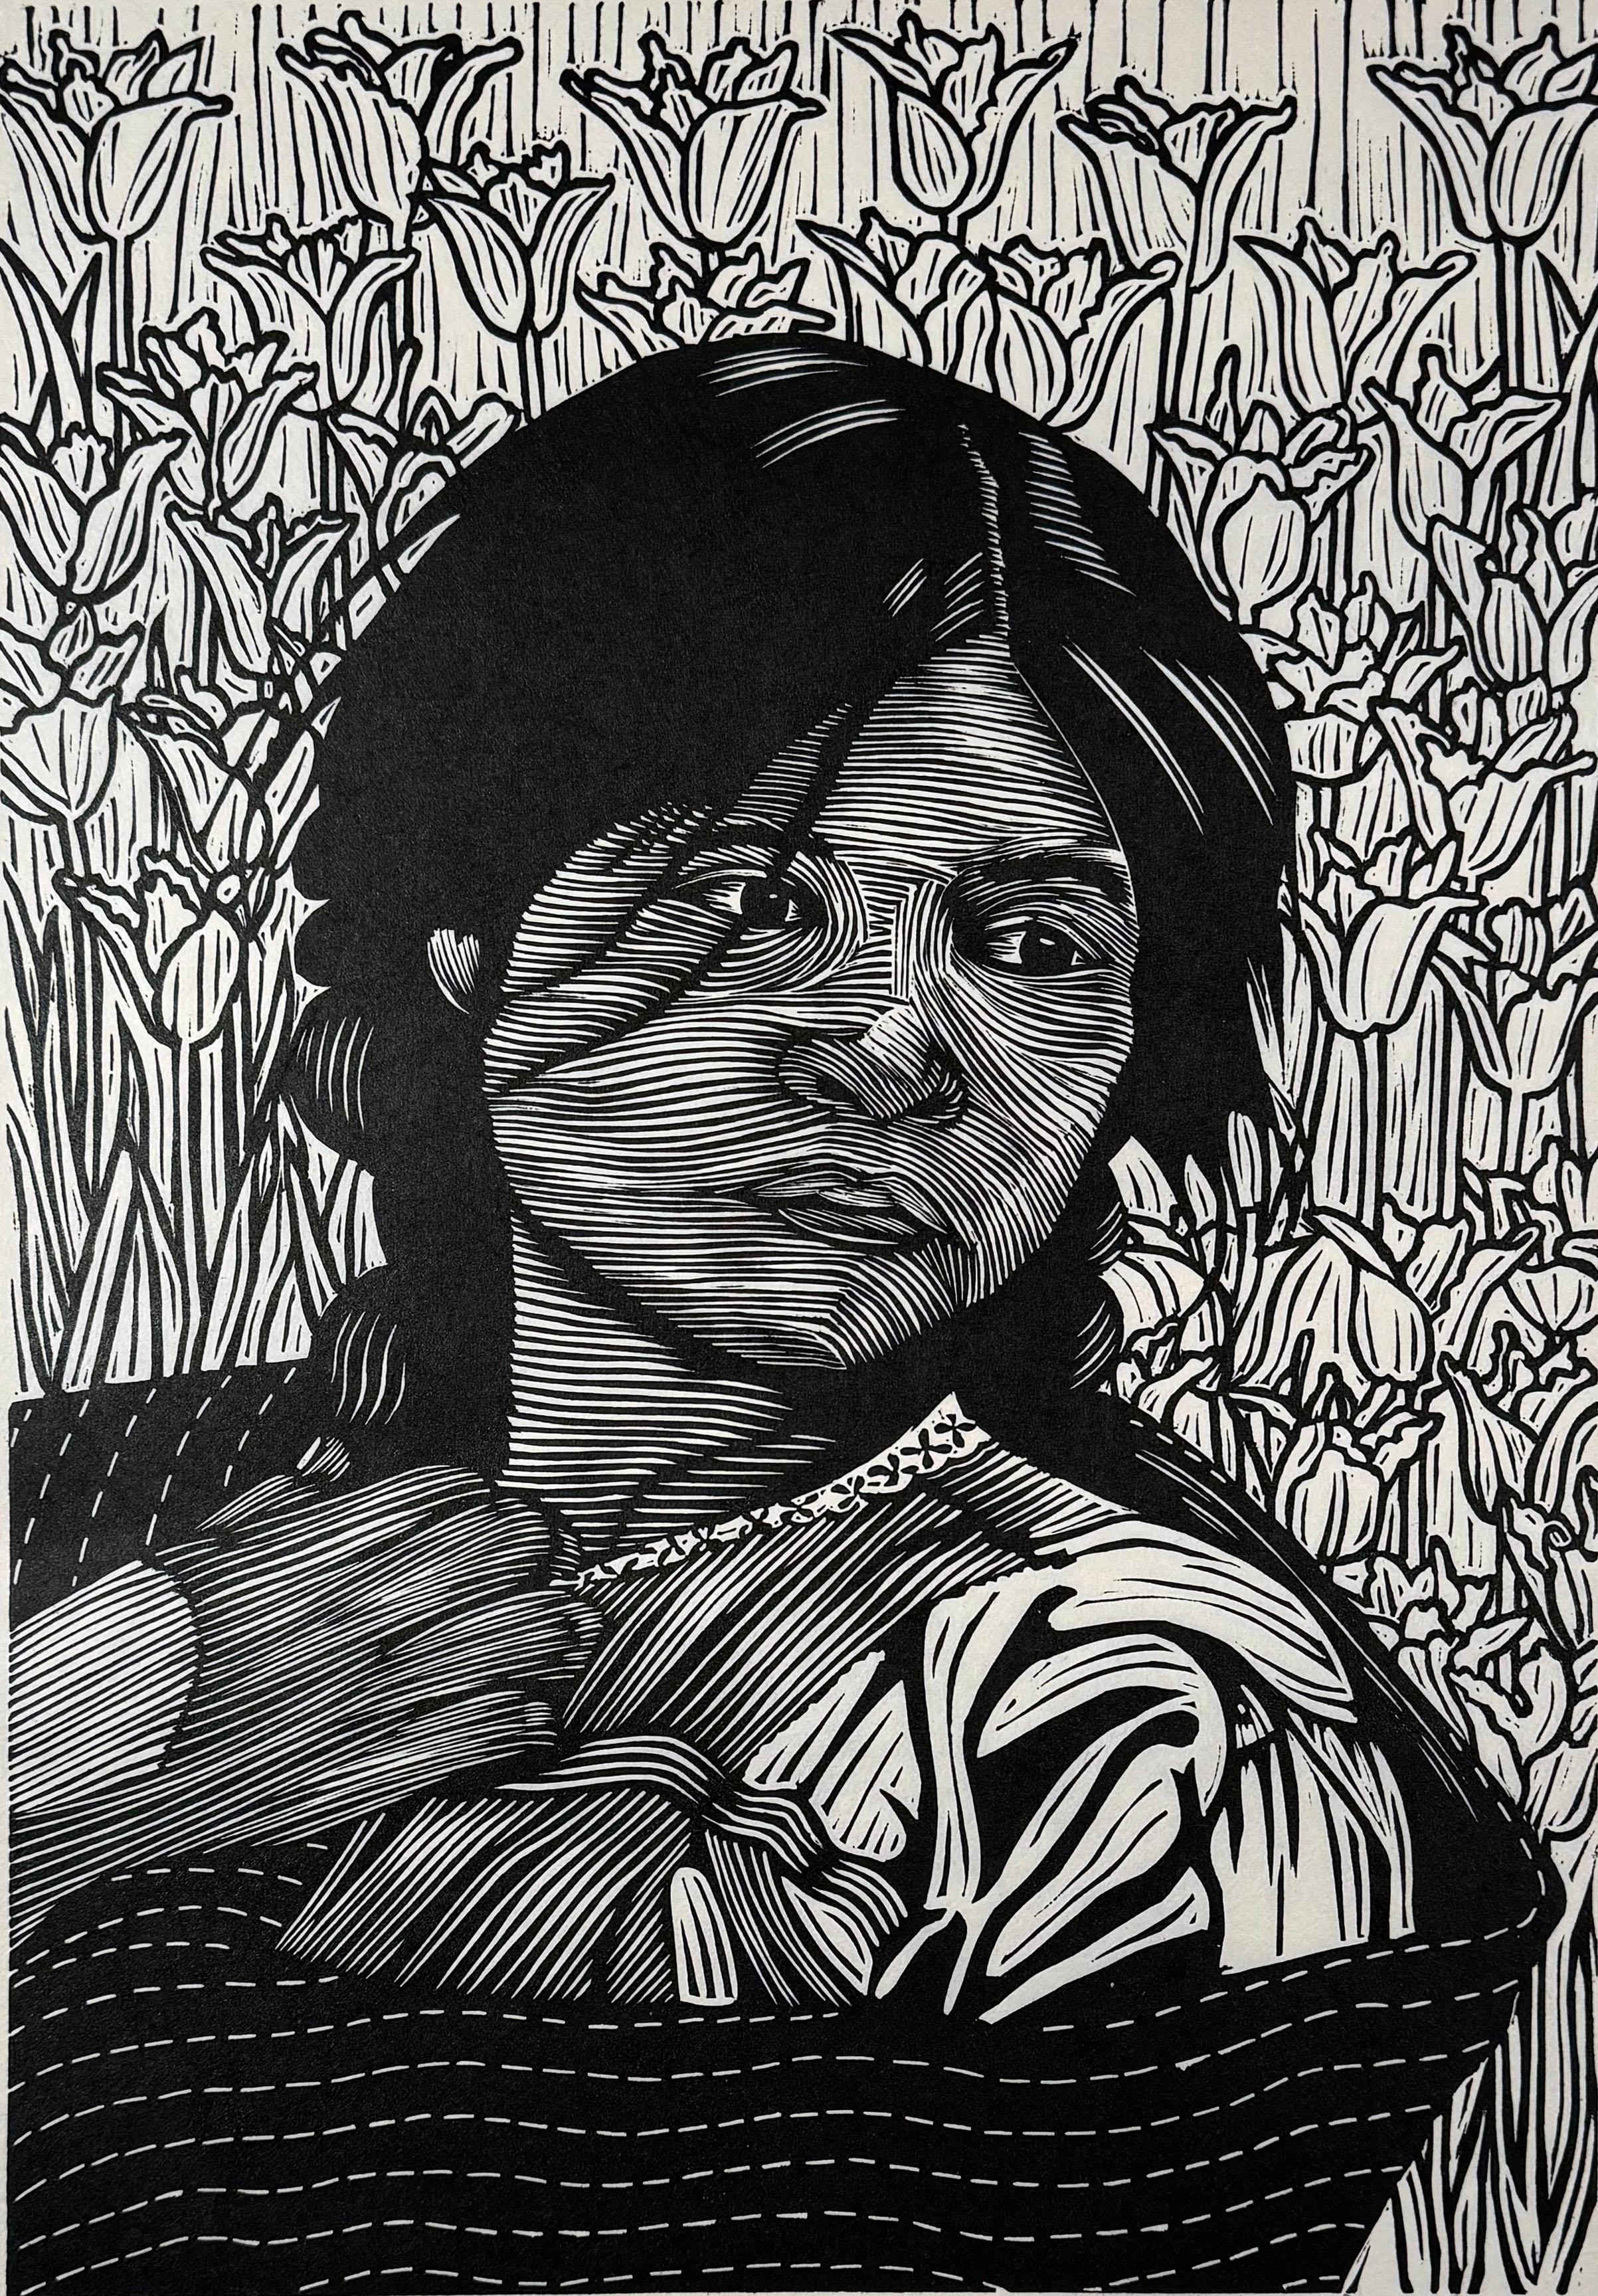 Medium: Linolschnitt
Jahr: 2022
Bildgröße: 18 x 12 Zoll
Auflagenhöhe: 10

Junges indigenes Mädchen vor einem Blumenhintergrund.

Als Kulturaktivist, Künstler und Grafiker hat Juan Fuentes seine Karriere dem Ziel gewidmet, Teil einer globalen